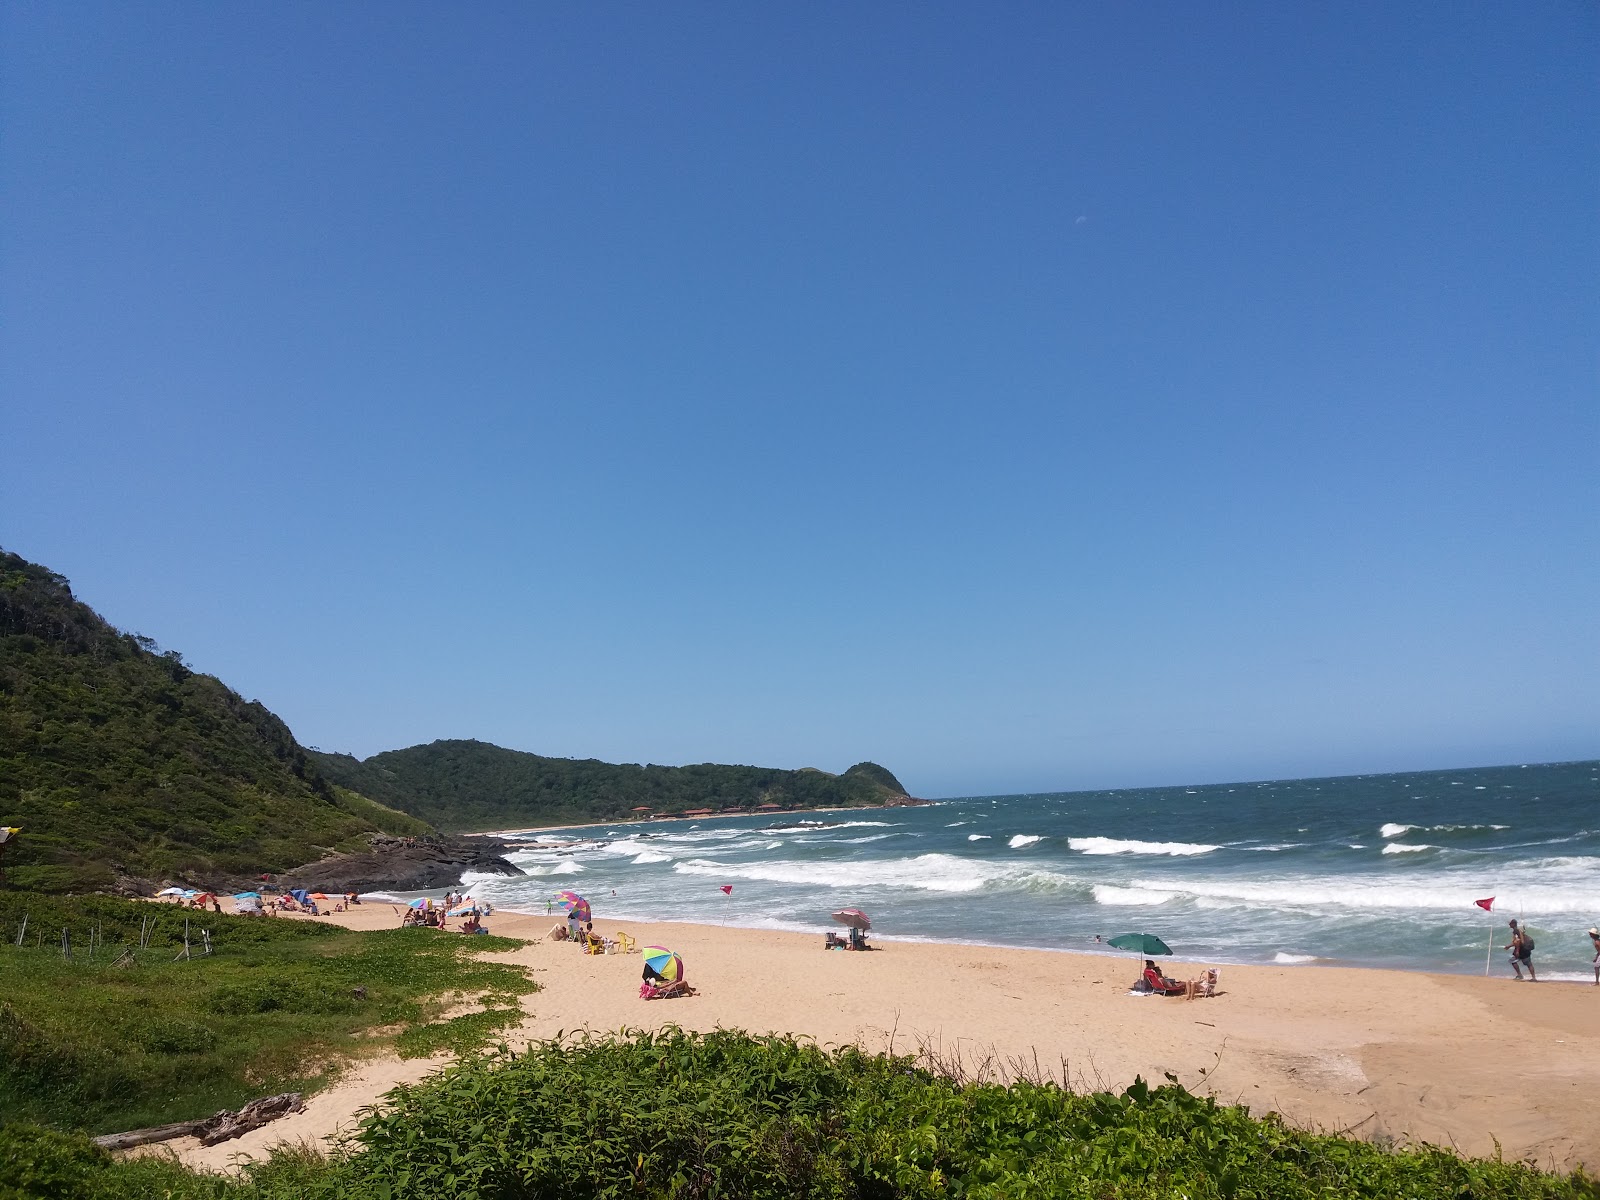 Foto af Praia Vermelha - populært sted blandt afslapningskendere